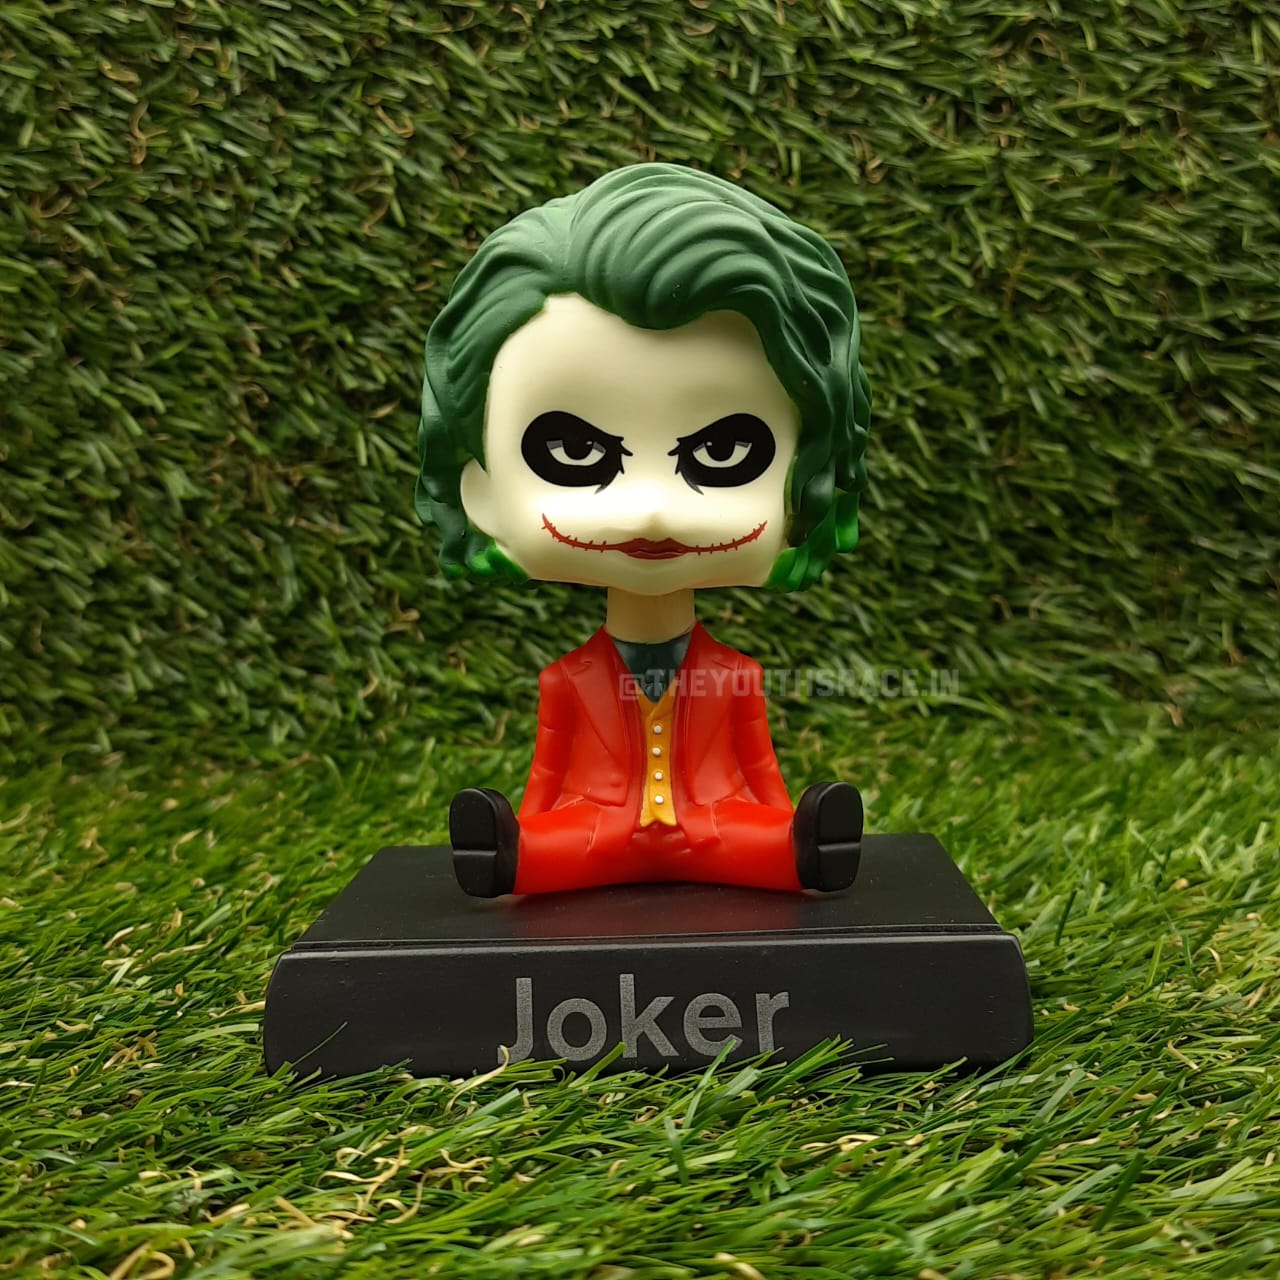 Joker (Red) Bobblehead